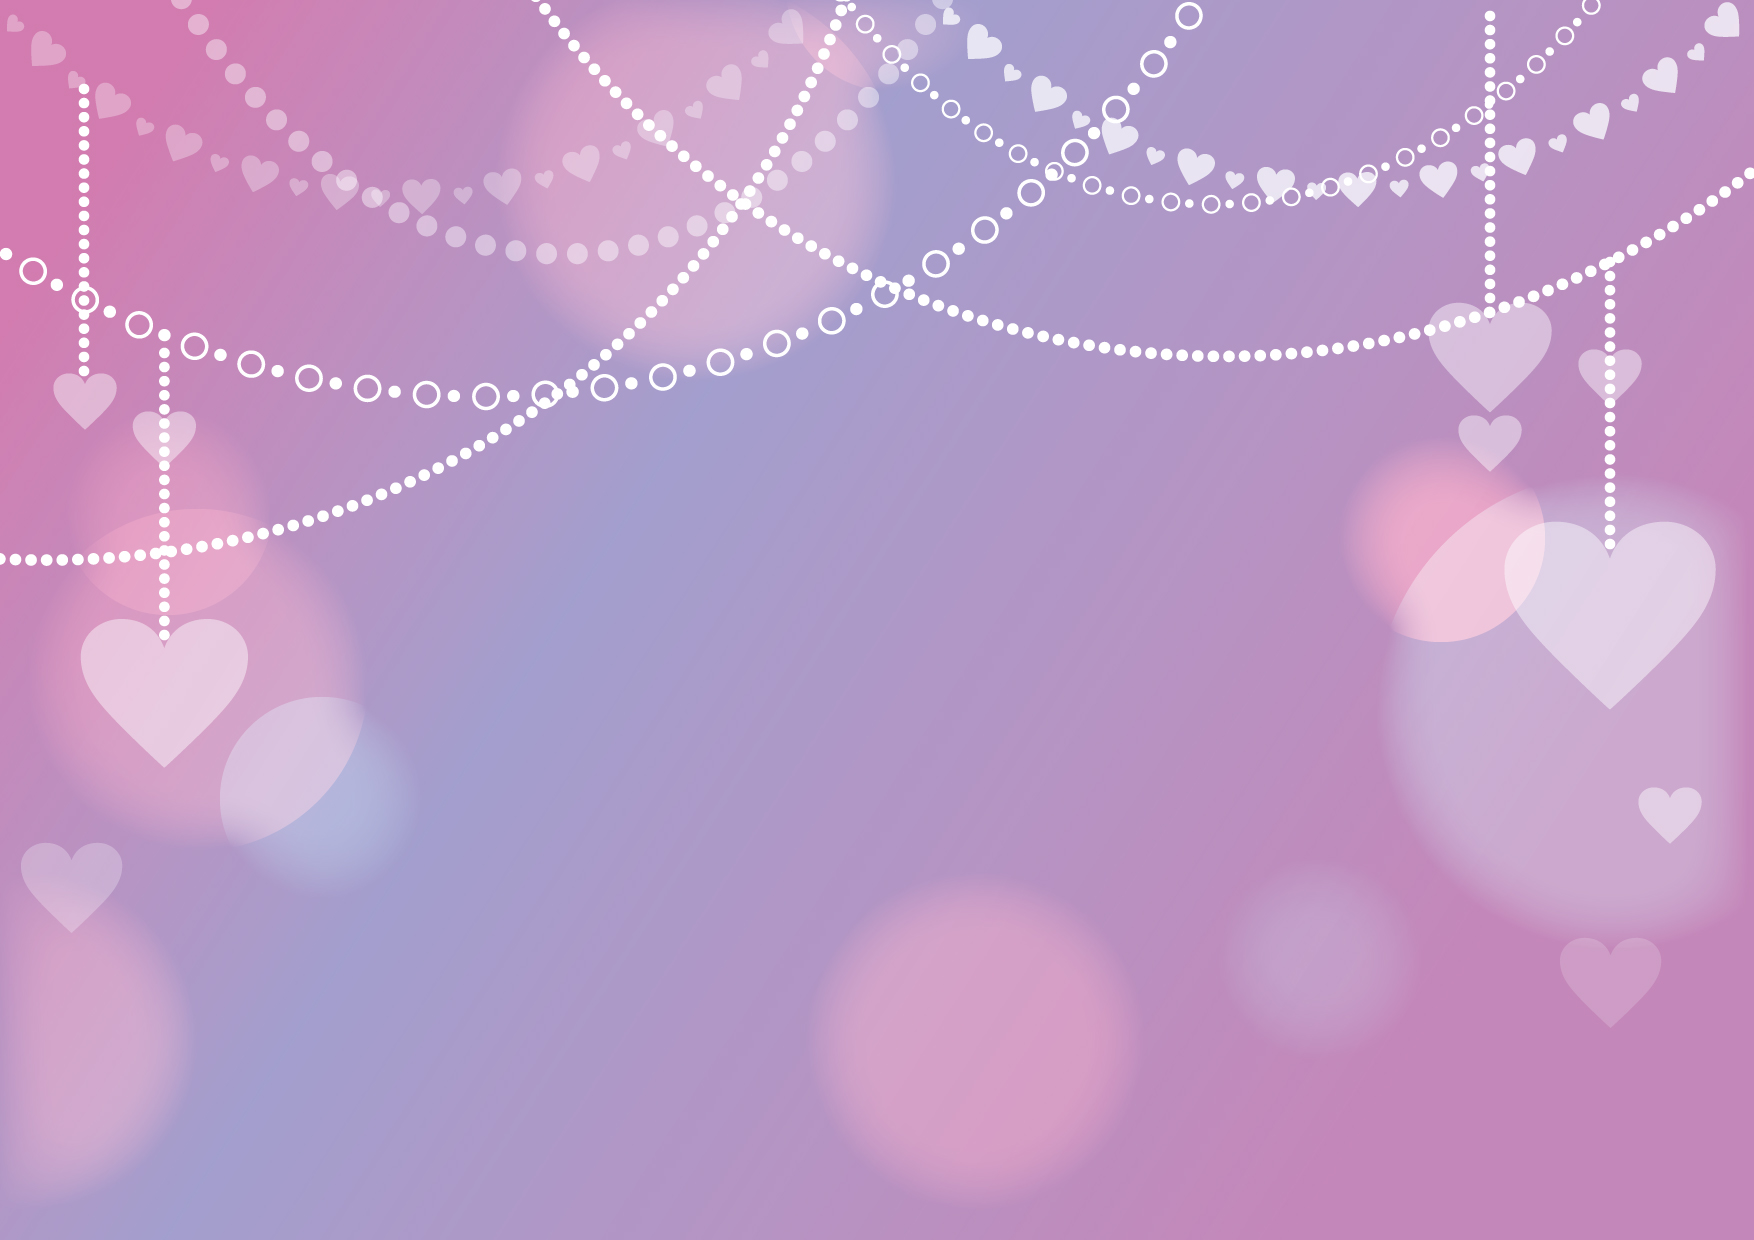 可愛いイラスト無料 ハート チェーン 背景 紫色 Free Illustration Heart Chain Background Purple 公式 イラストダウンロード